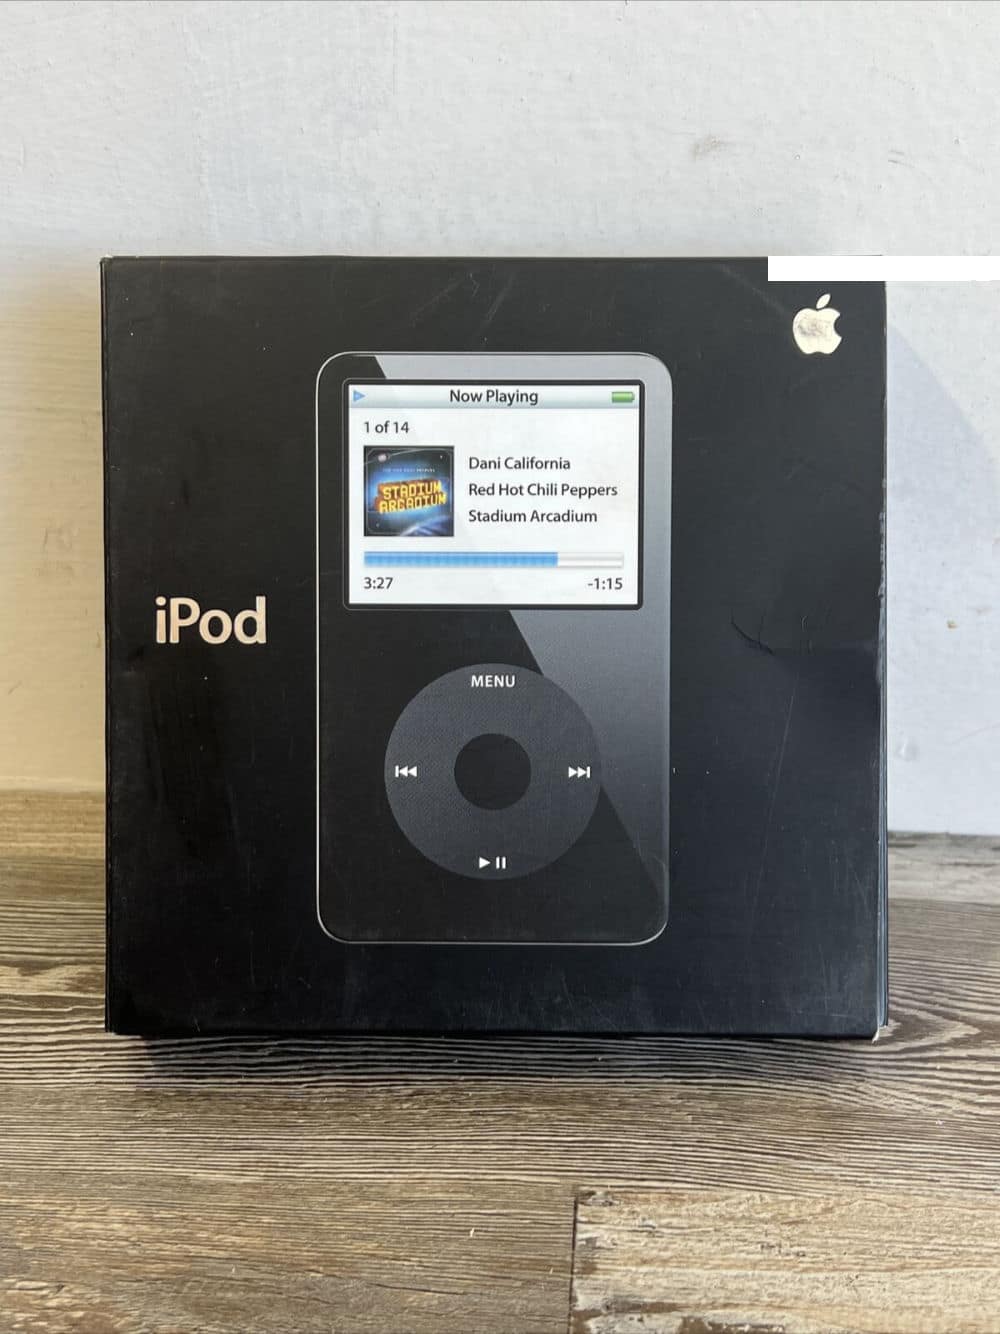 Hidupkan kembali iPod Classic Video Anda dalam beberapa langkah sederhana